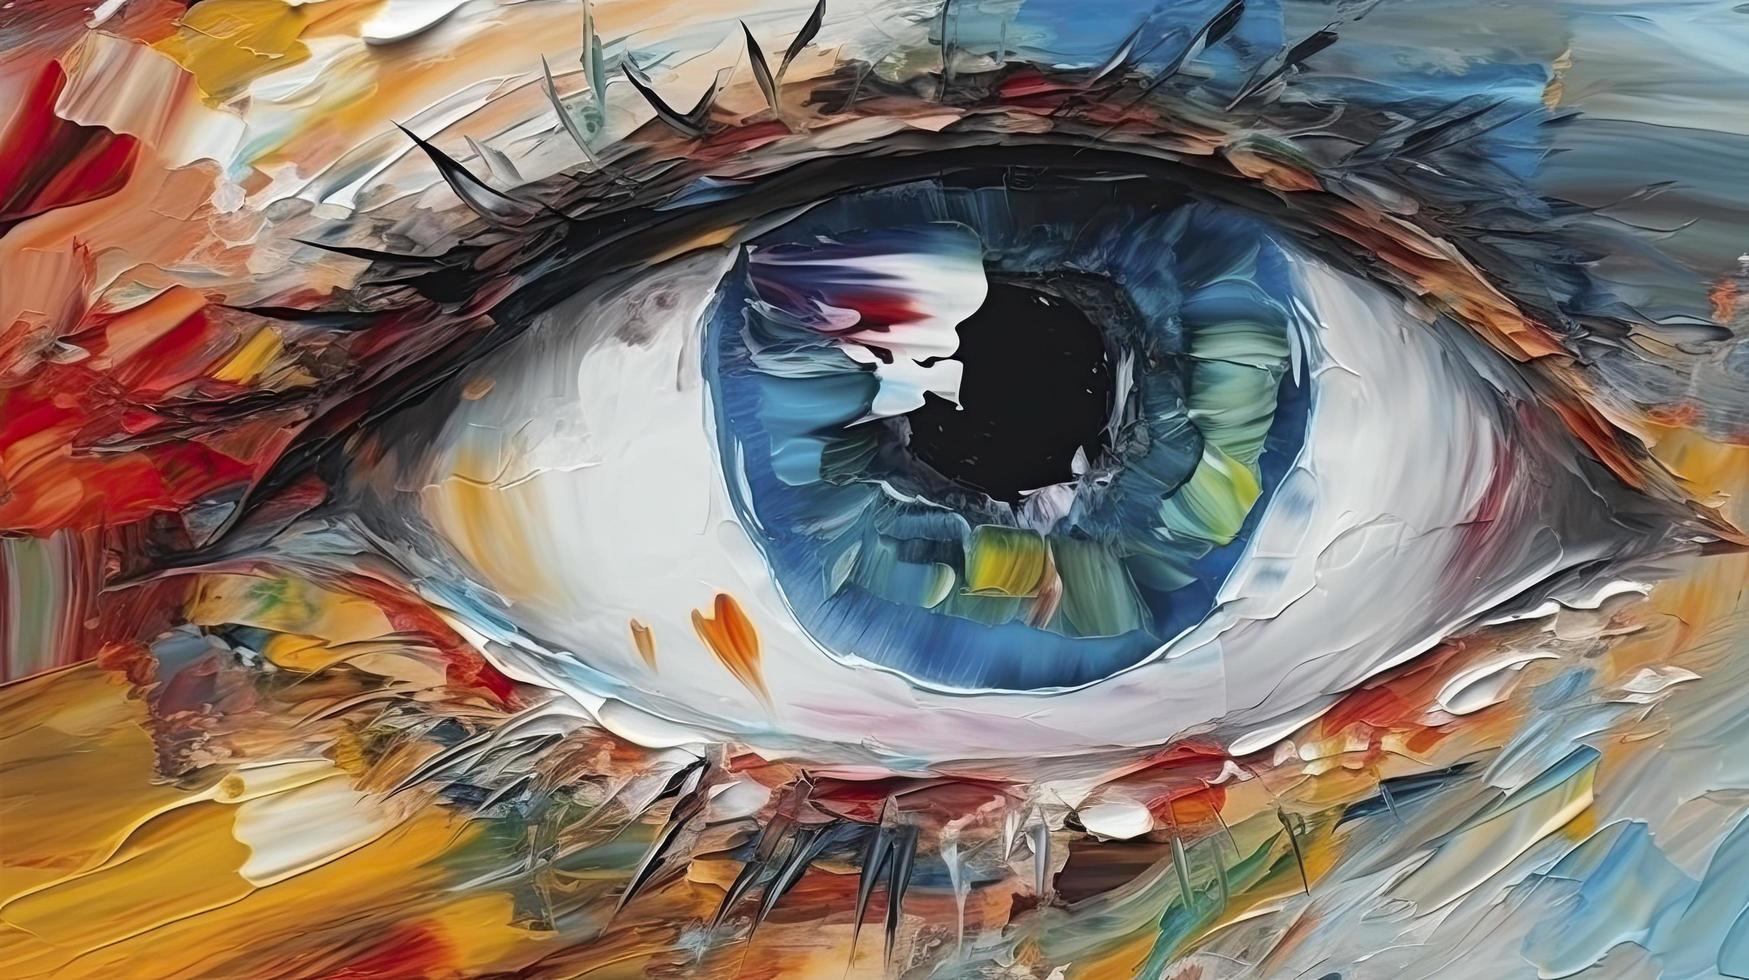 petróleo cuadro. conceptual resumen imagen de el ojo. petróleo pintura en vistoso colores, generar ai foto